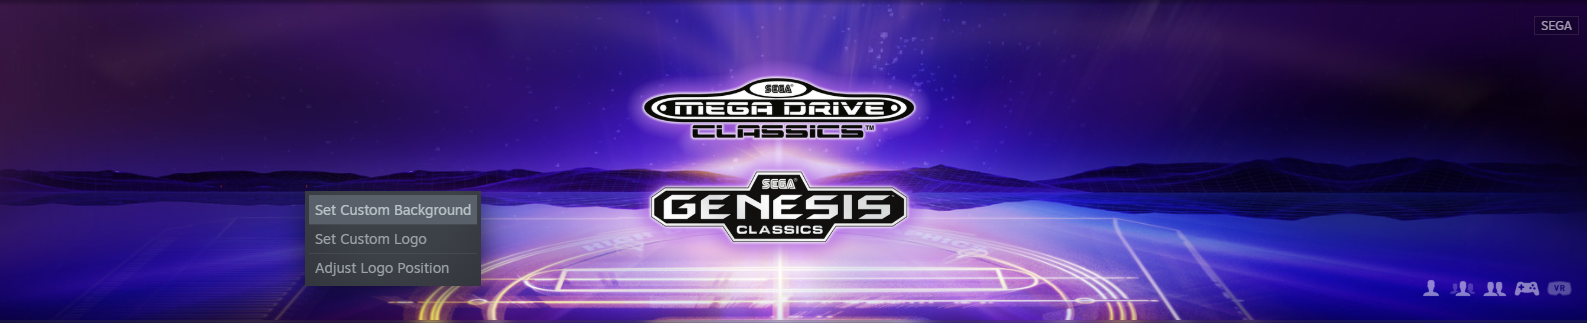 mega drive classics steam